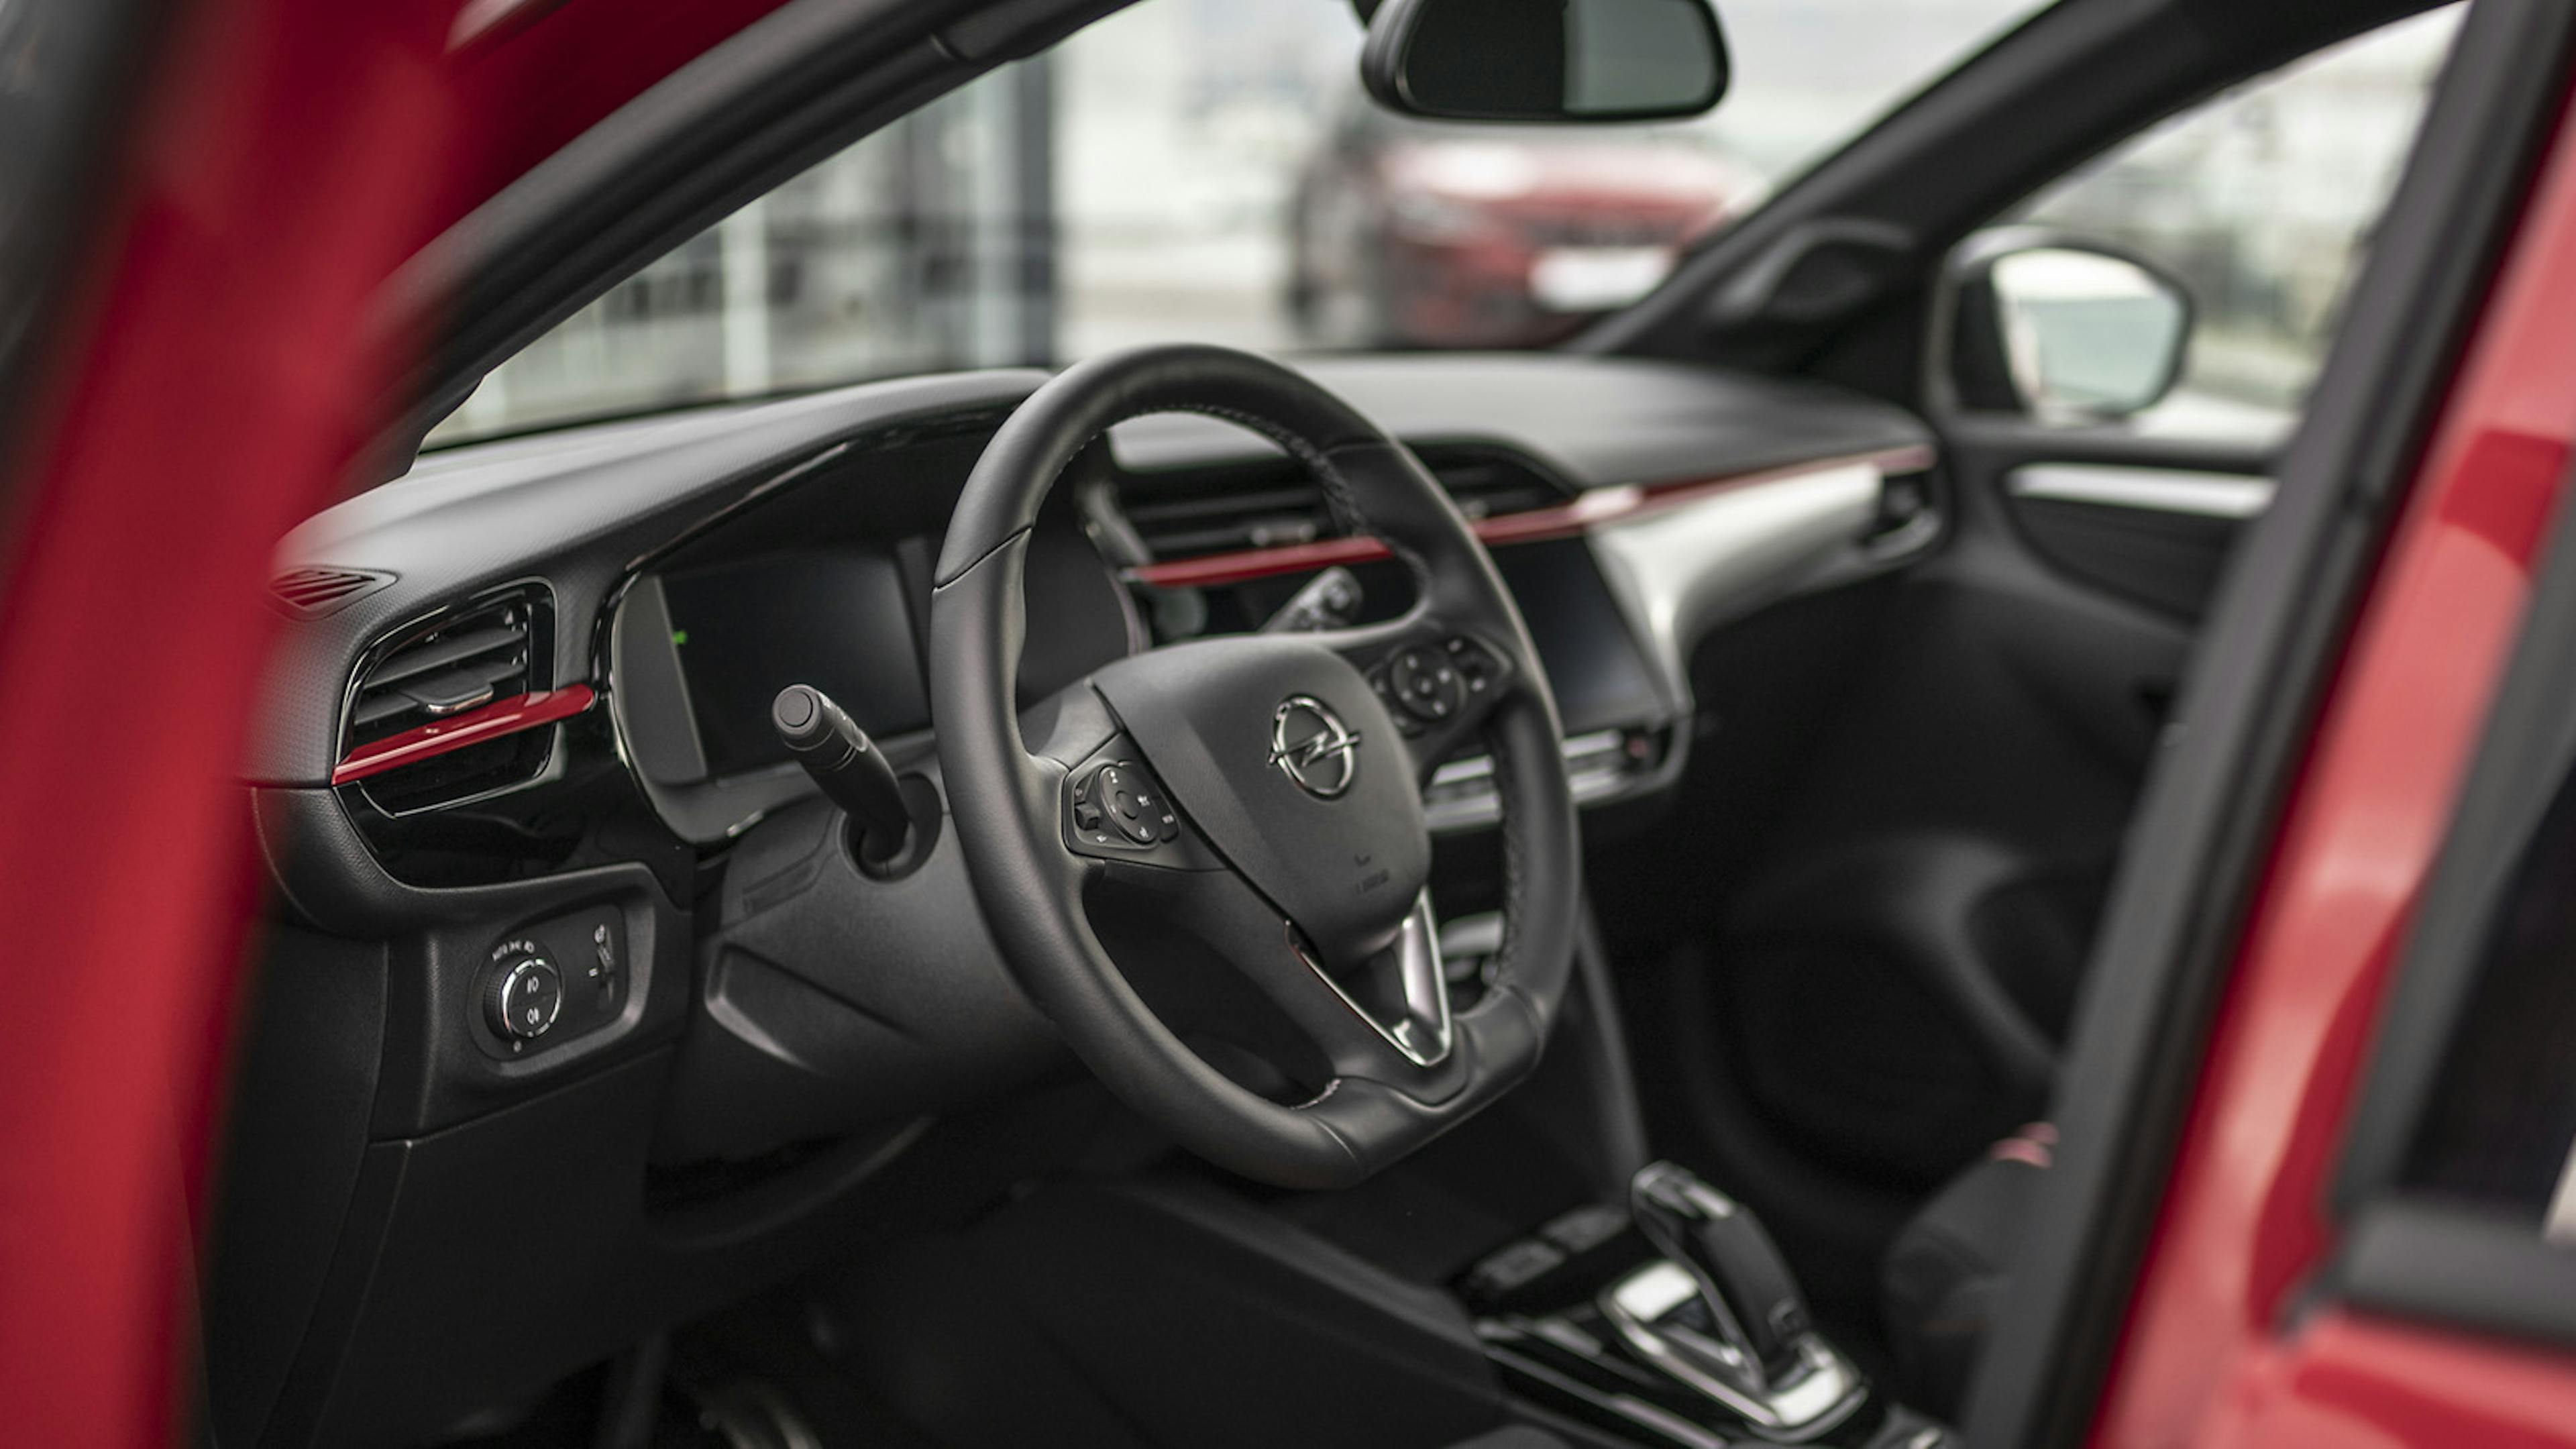 Innenansicht des Opel Corsa bei geöffneter Fahrertür